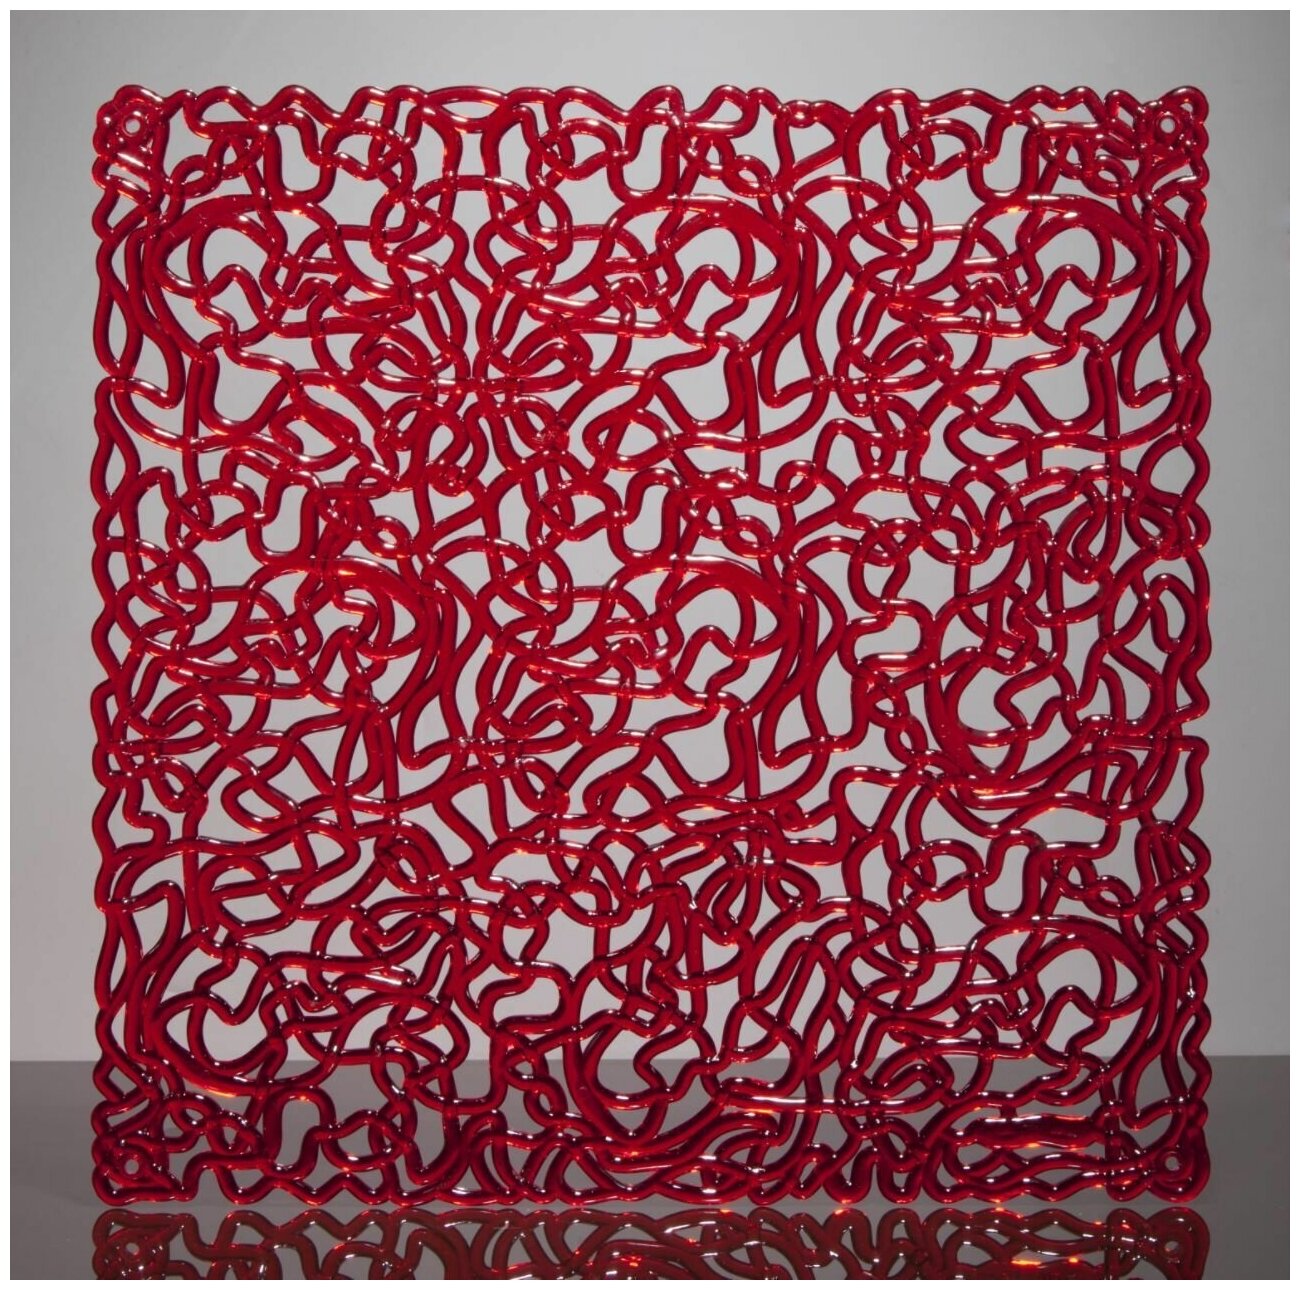 Комплект декоративных панелей из 4 шт. Jilda, коллекция "Паутина", 29х29 см, материал полистирол, цвет - красный